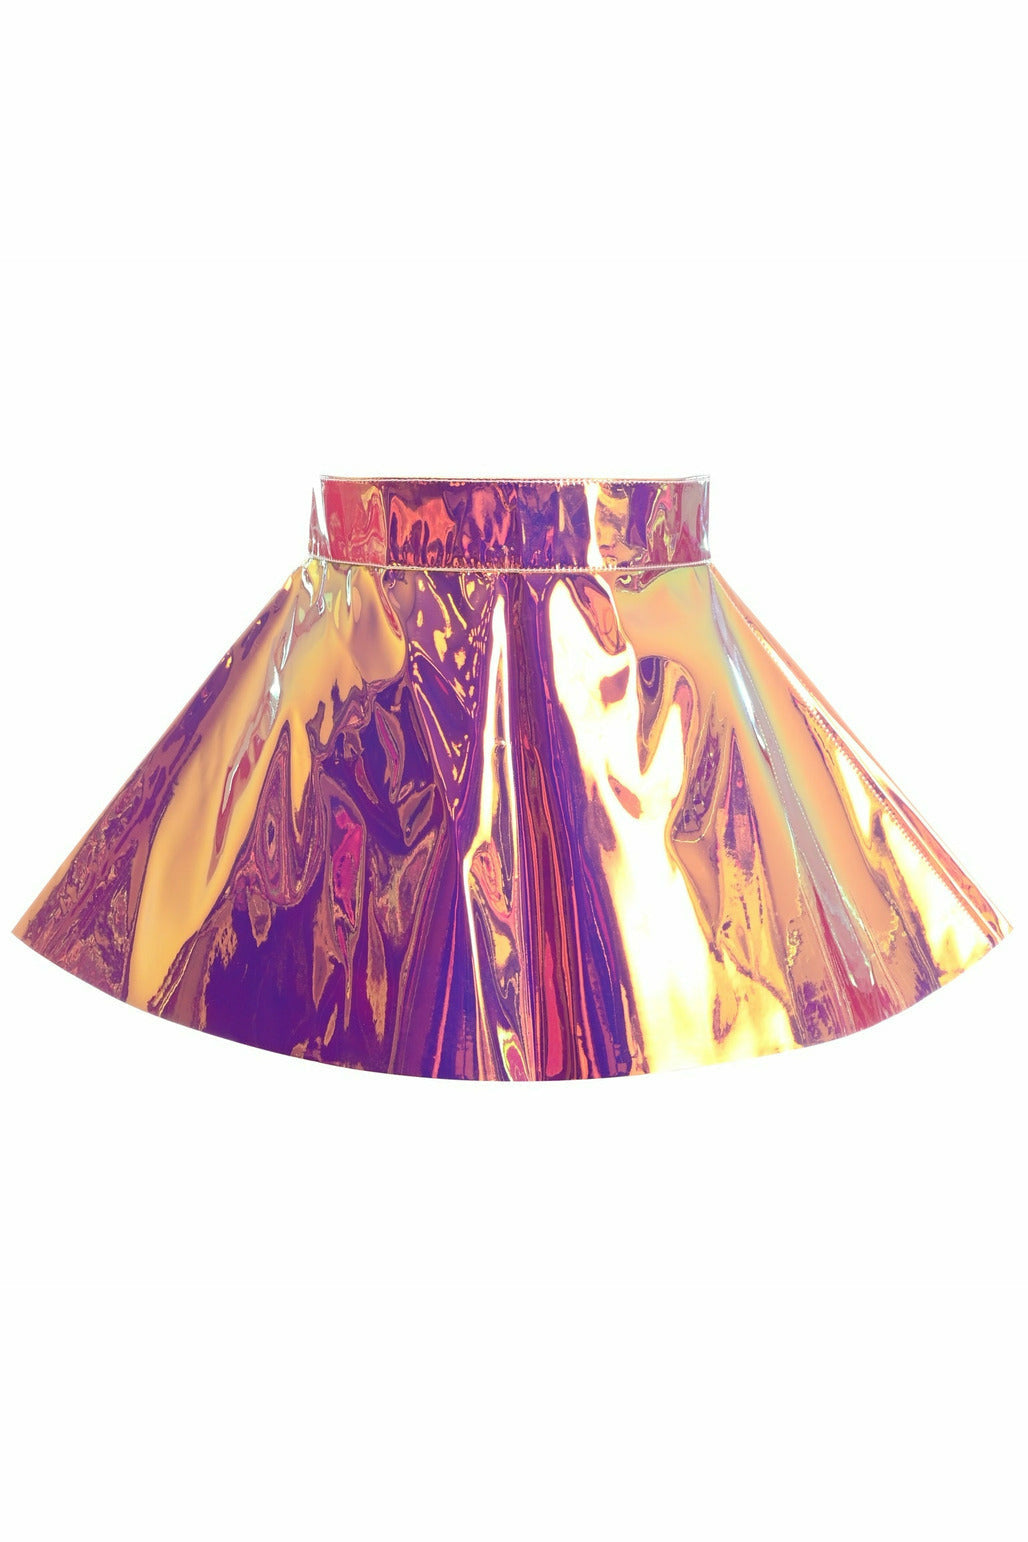 Rainbow Gold Holo Skater Skirt - Lust Charm 